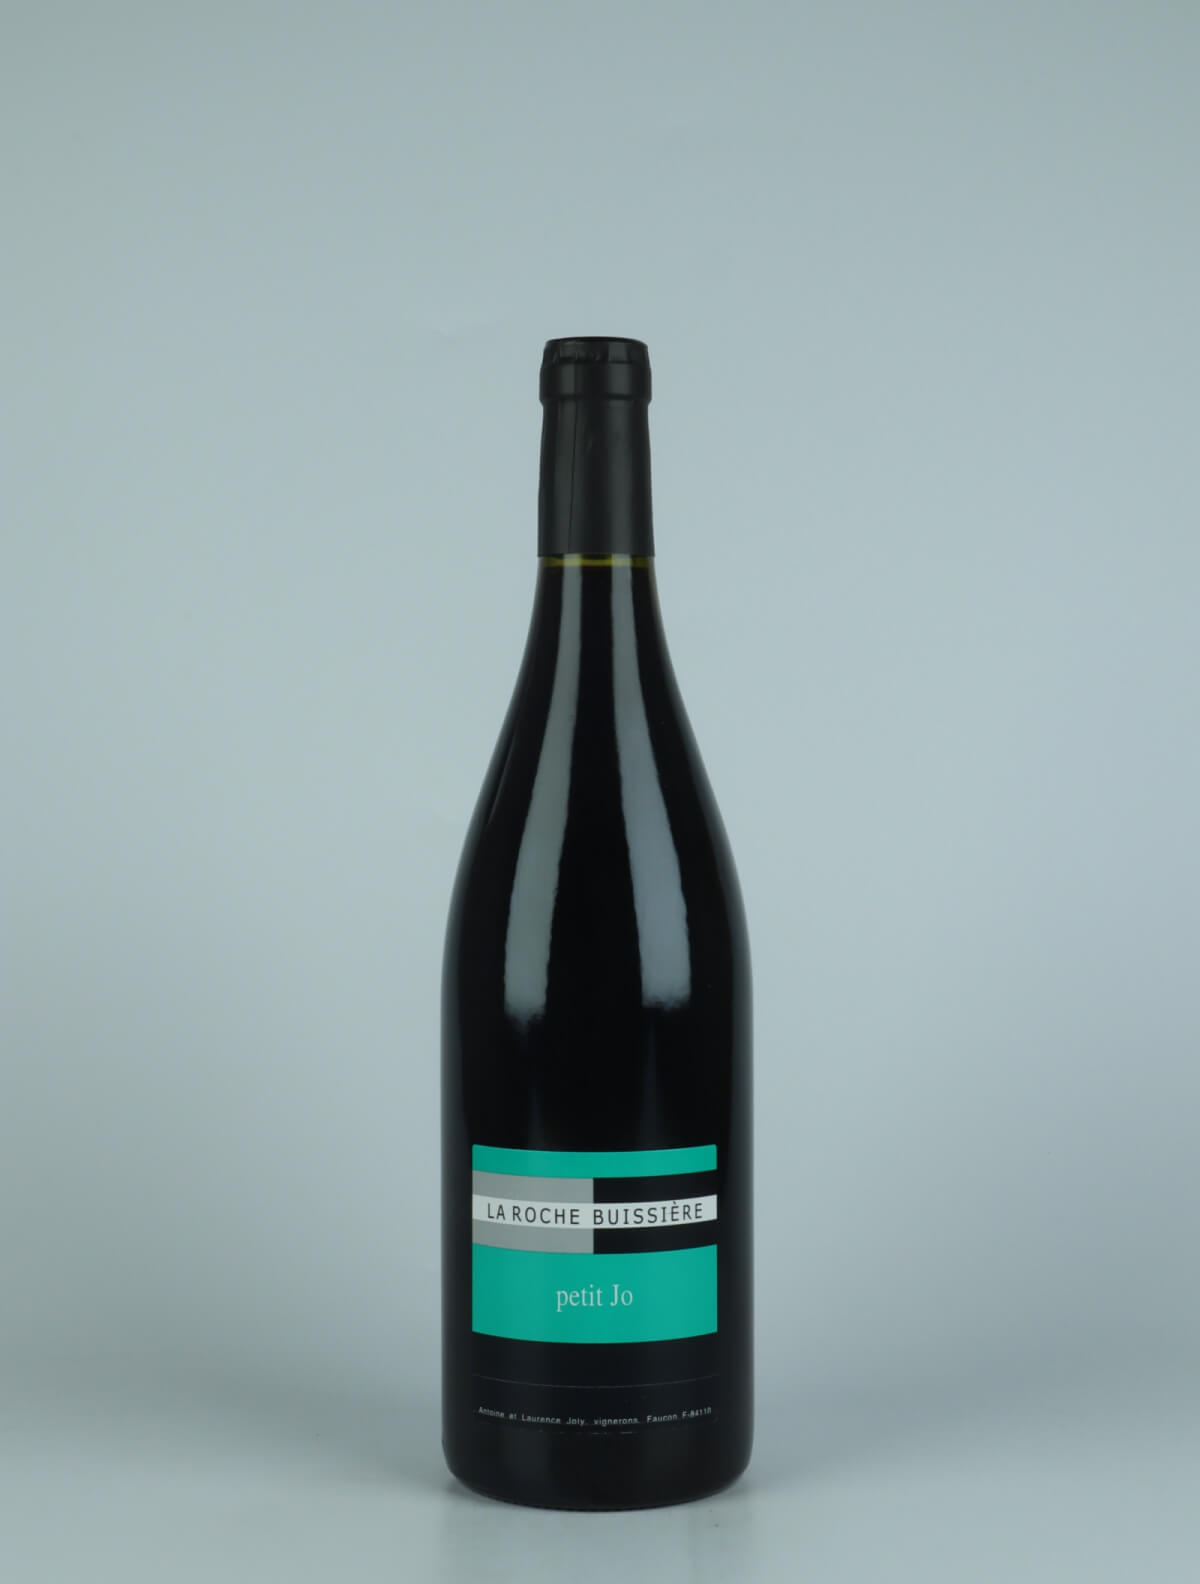 En flaske N.V. Petit Jo (2020) Rødvin fra La Roche Buissière, Rhône i Frankrig